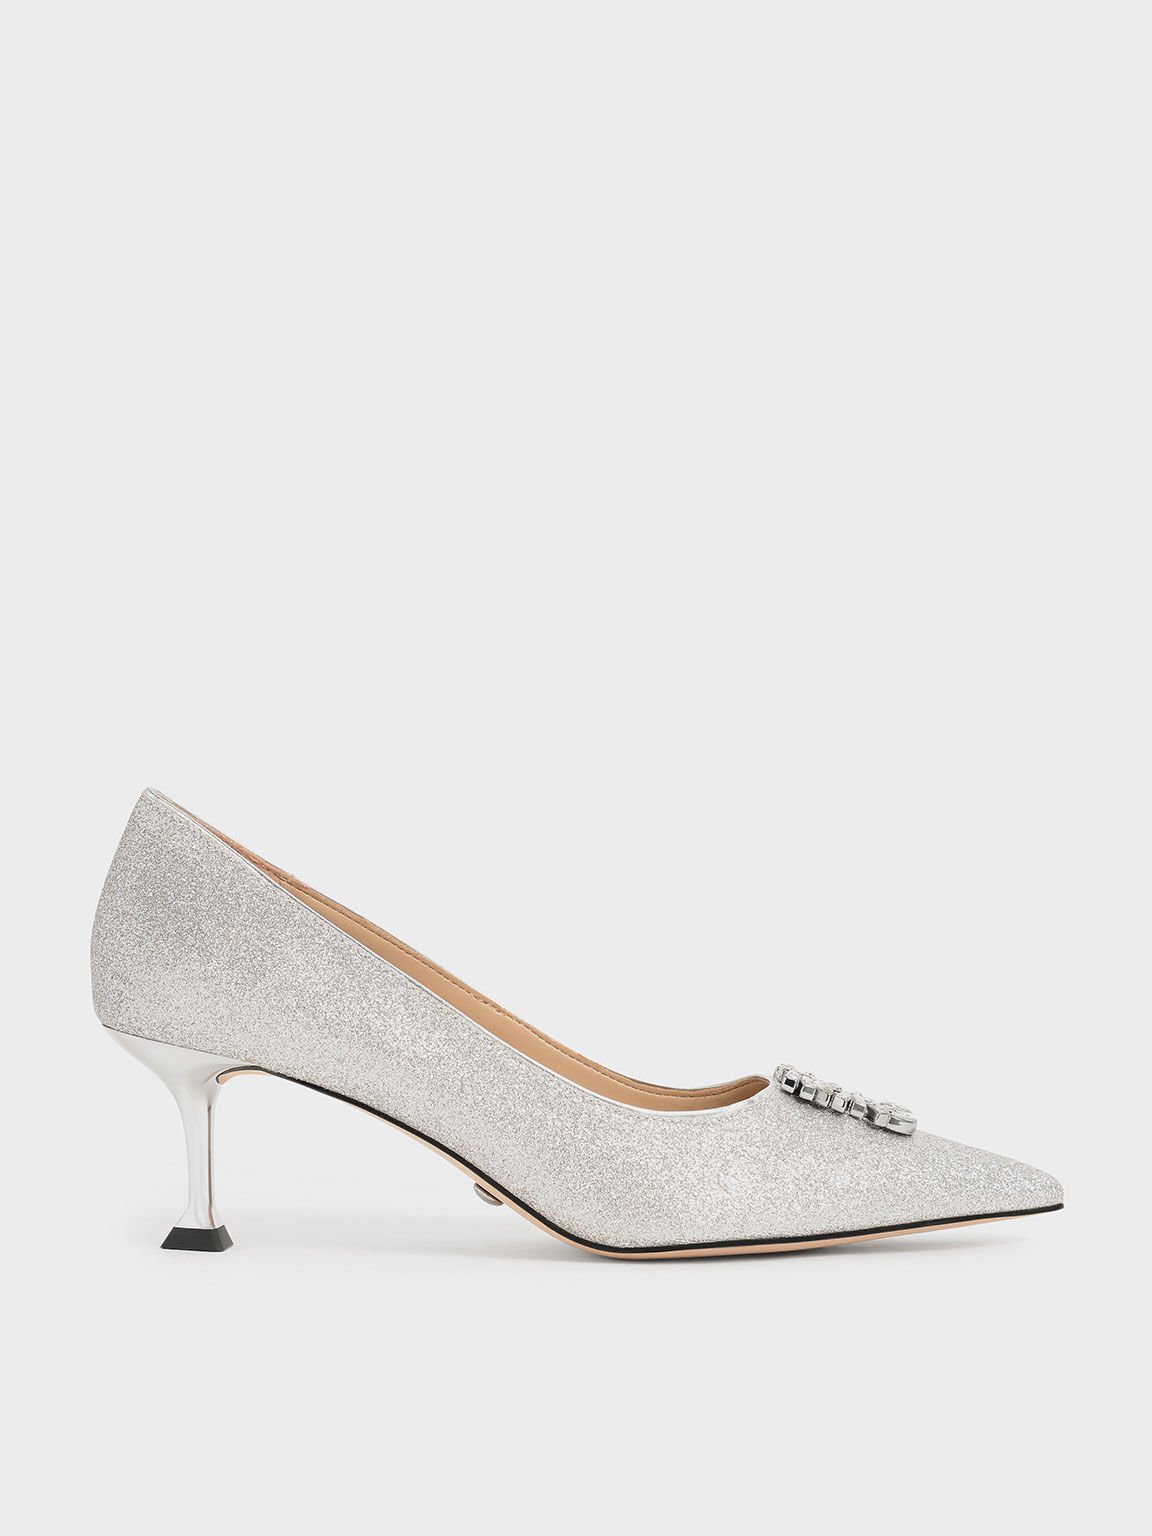 Silver Open-Toe Piper Kitten Heels For Women – Monrow Shoes